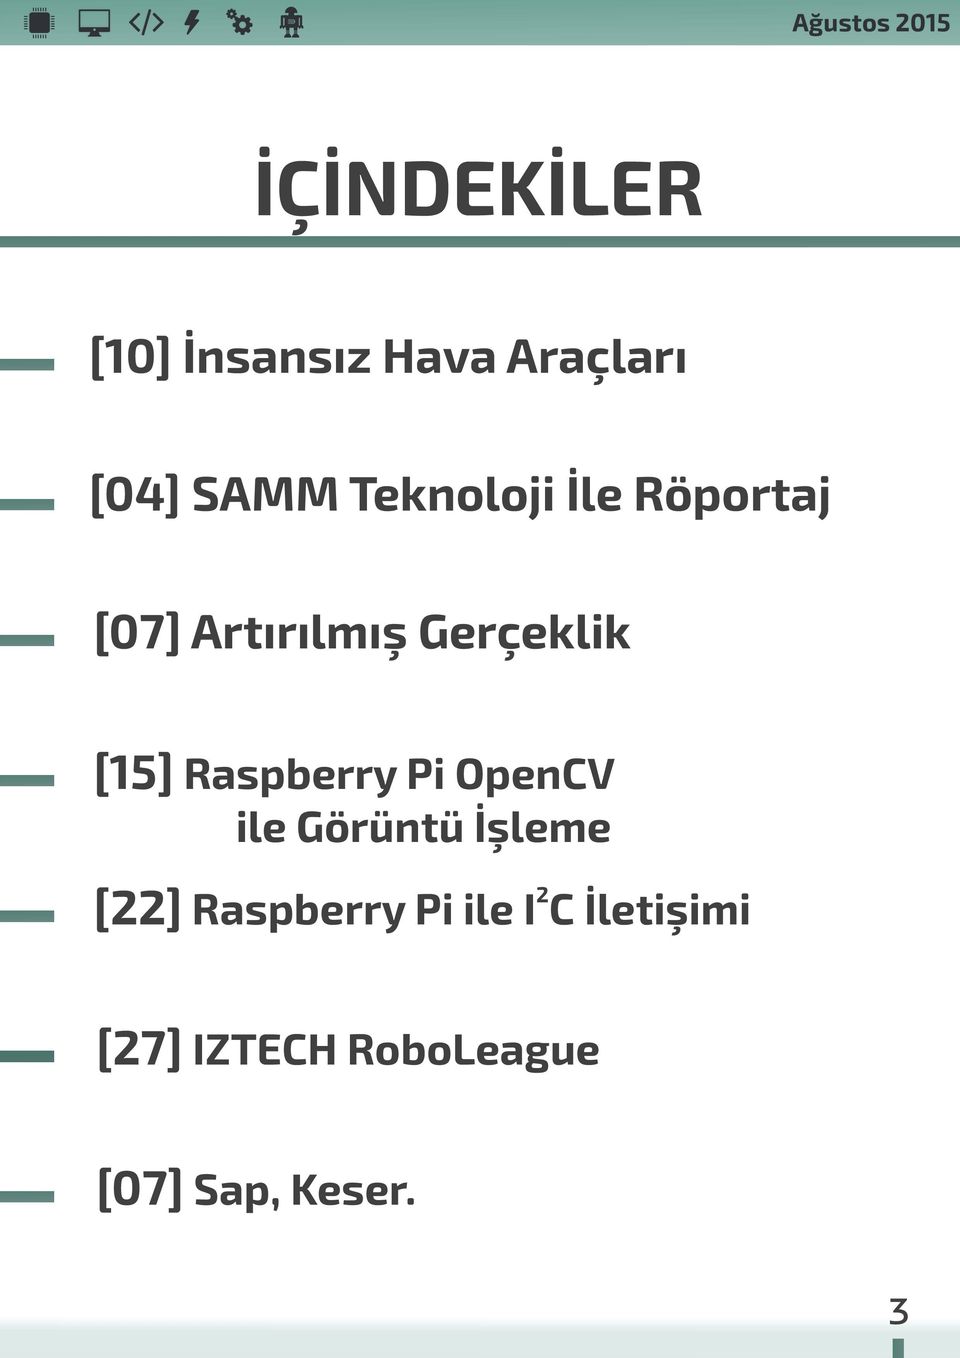 Raspberry Pi OpenCV ile Görüntü İşleme 2 [22] Raspberry